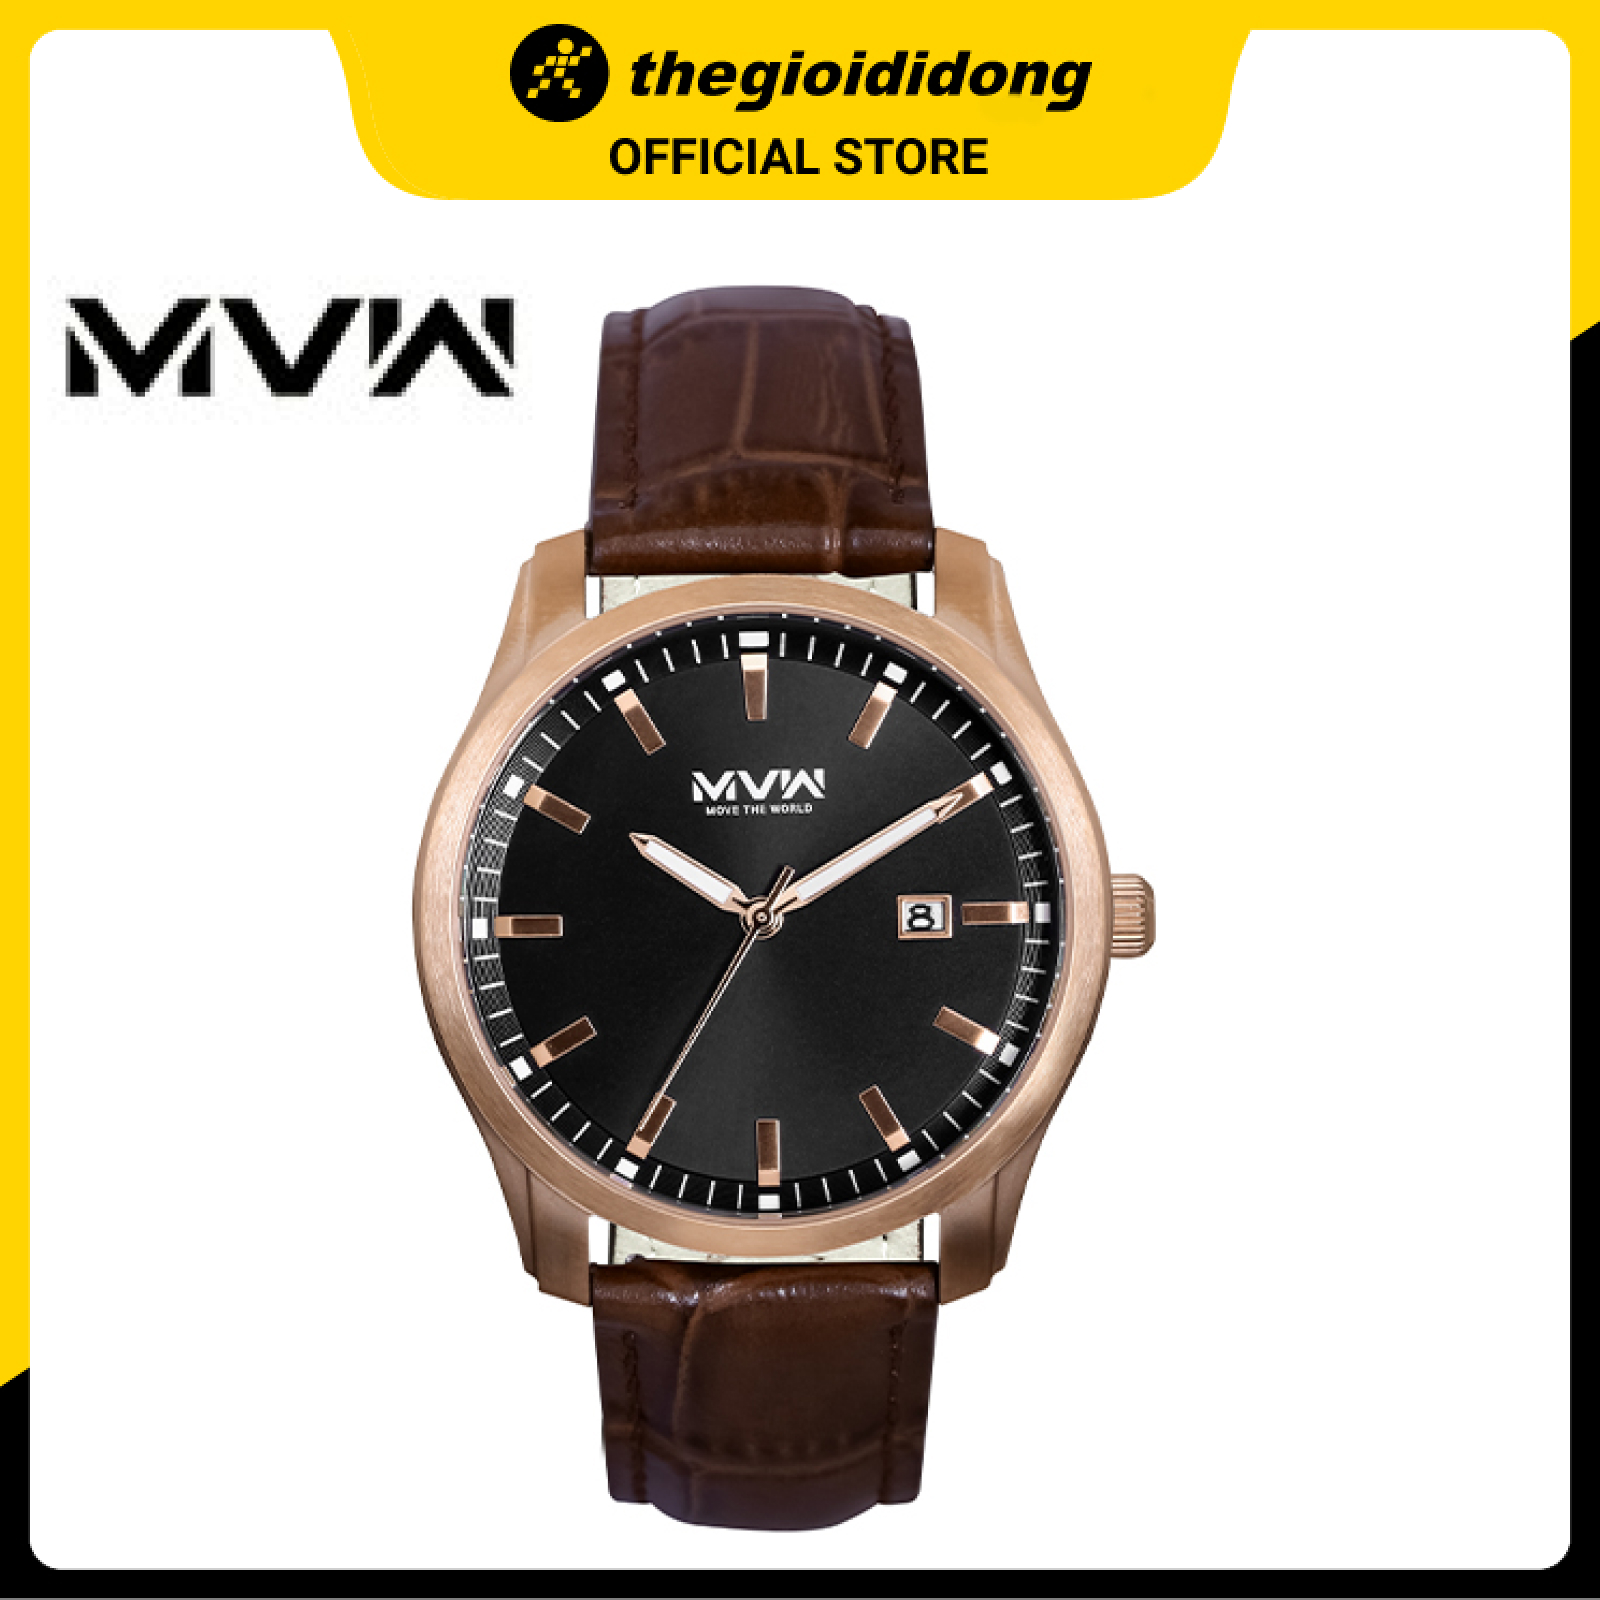 Đồng hồ Nam MVW ML037-01 - Hàng chính hãng